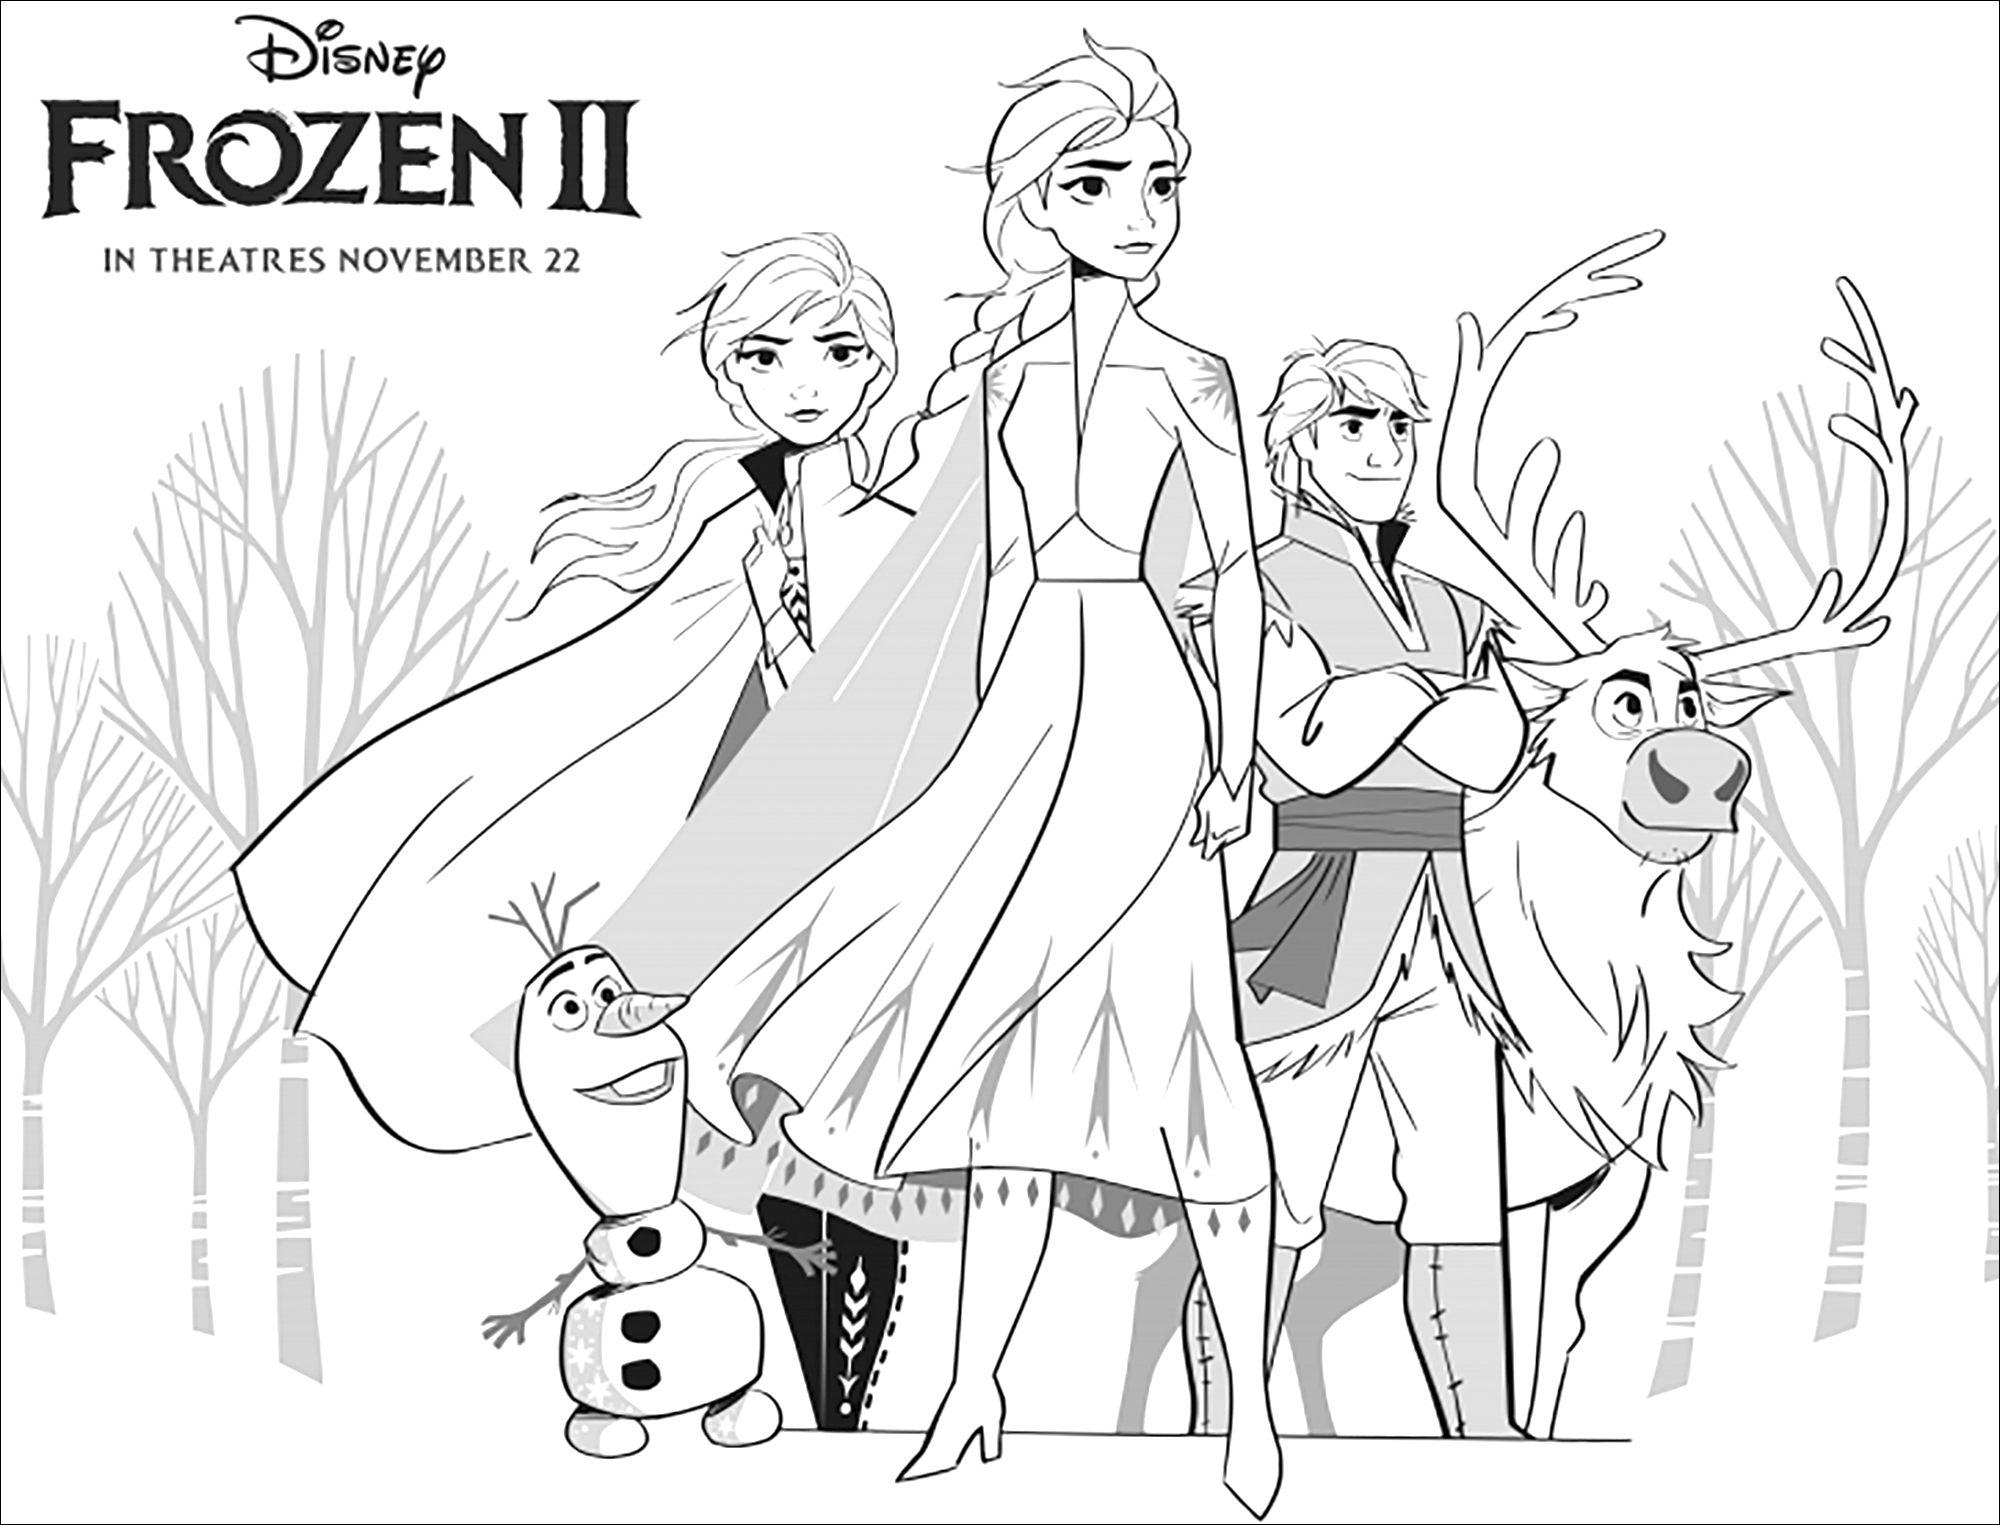 Elsa, Anna, Olaf, Sven, Kristoff réunis dans La reine des neiges 2 de Disney (version avec texte)